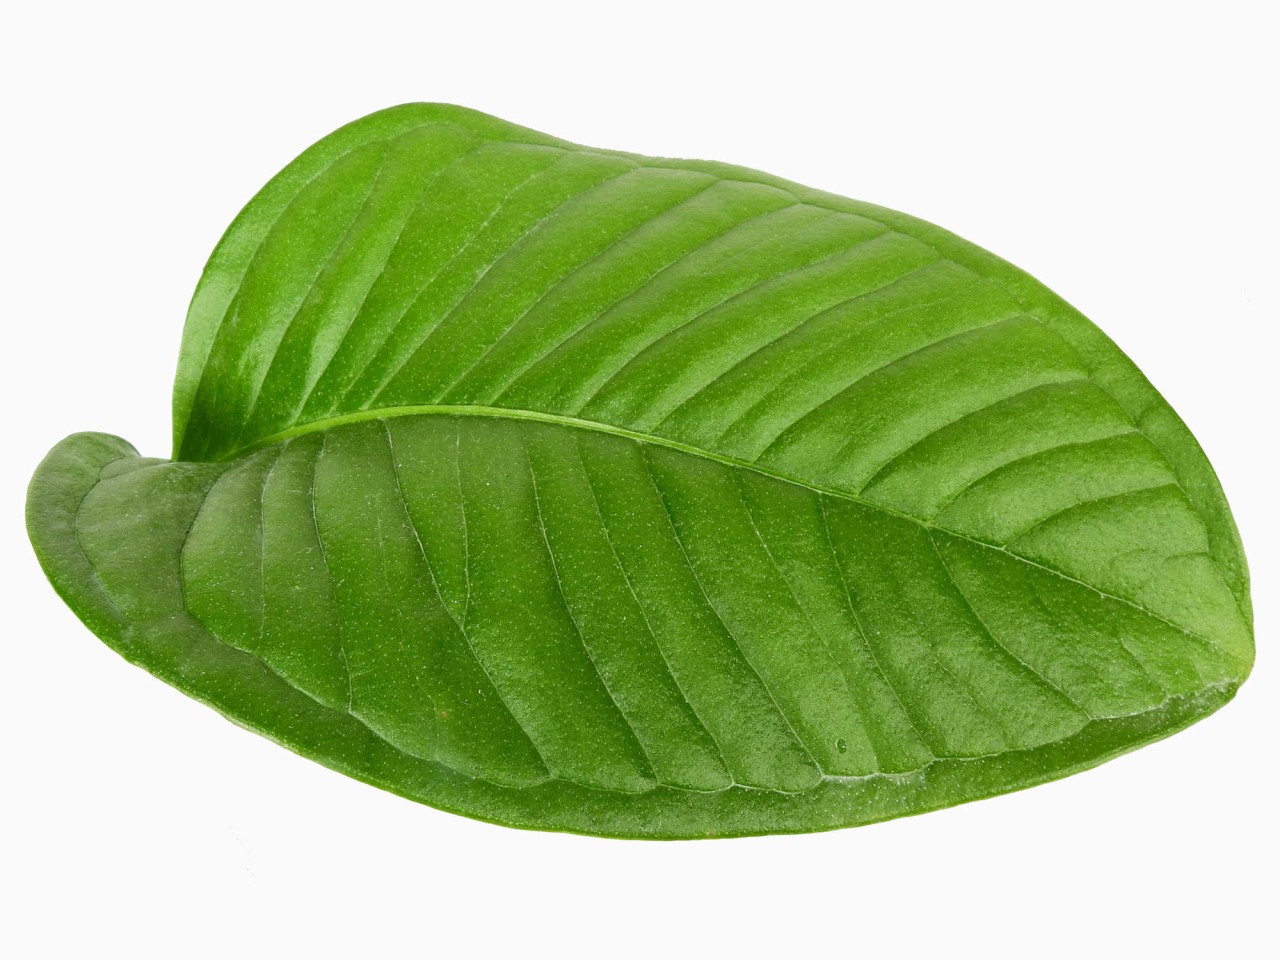 Anthurium umbricola (aka compact)